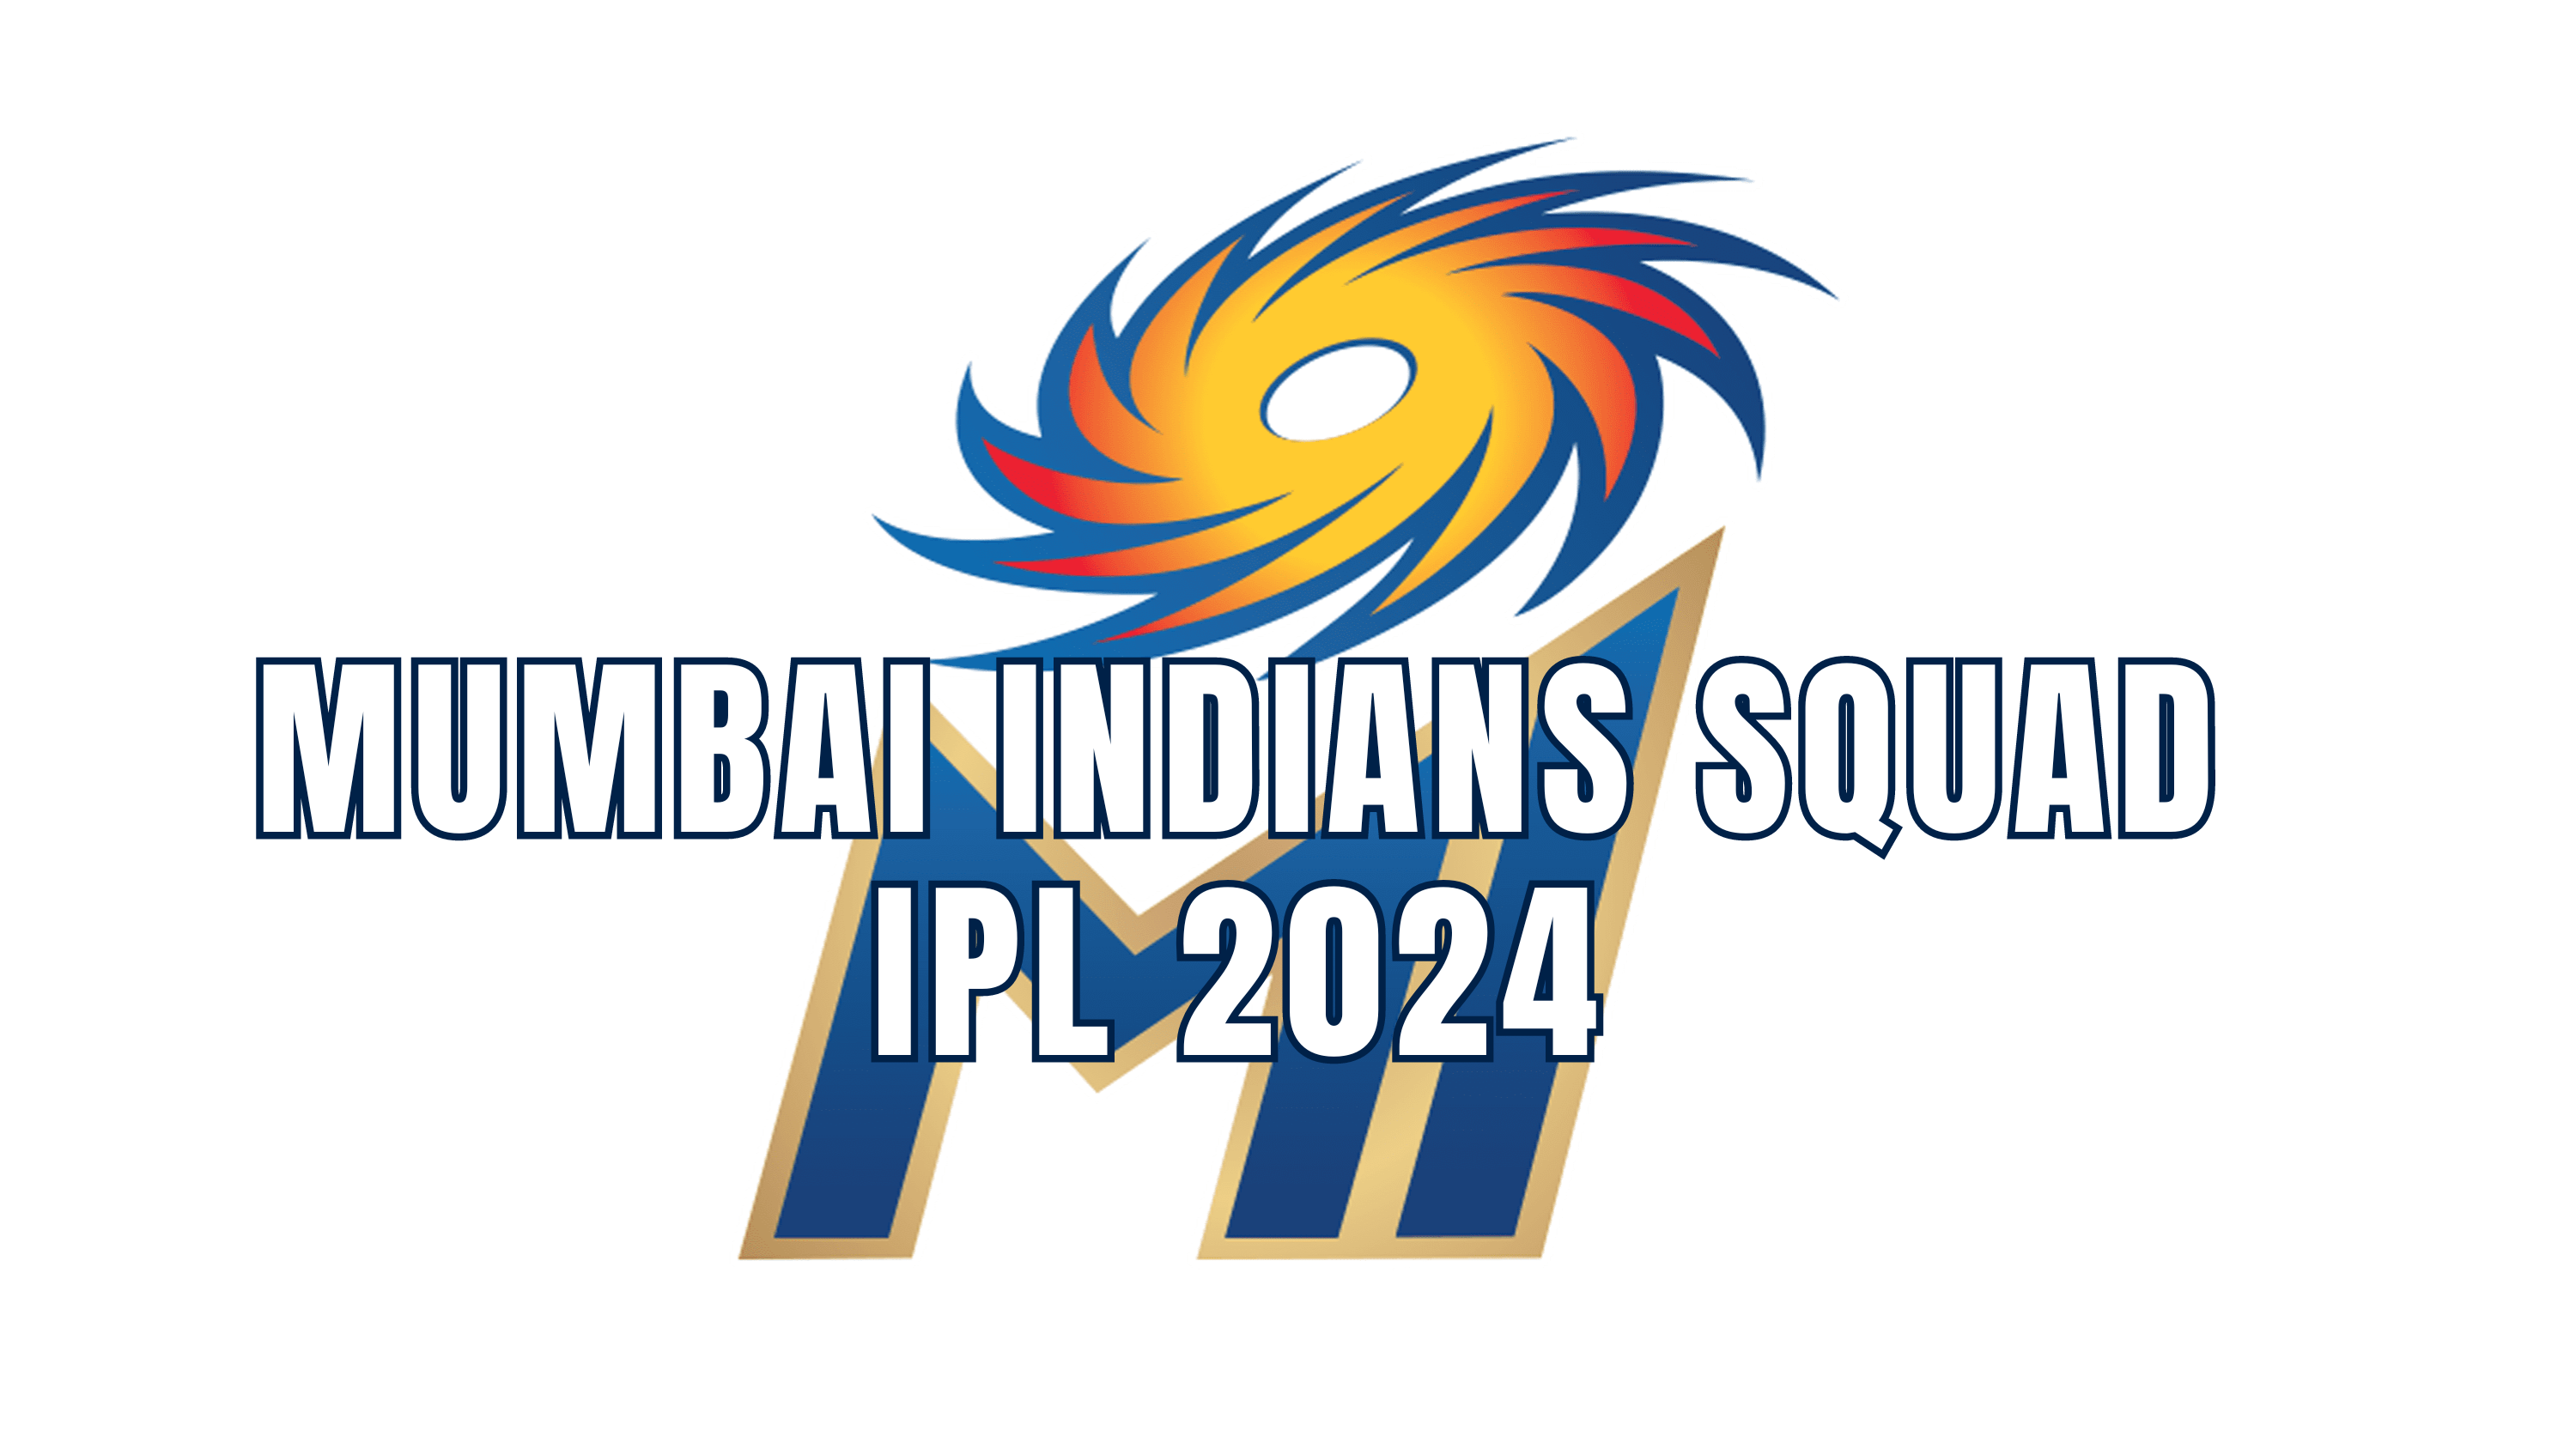 Confluent sponsors Mumbai Indians for Women's Premier League - MediaBrief